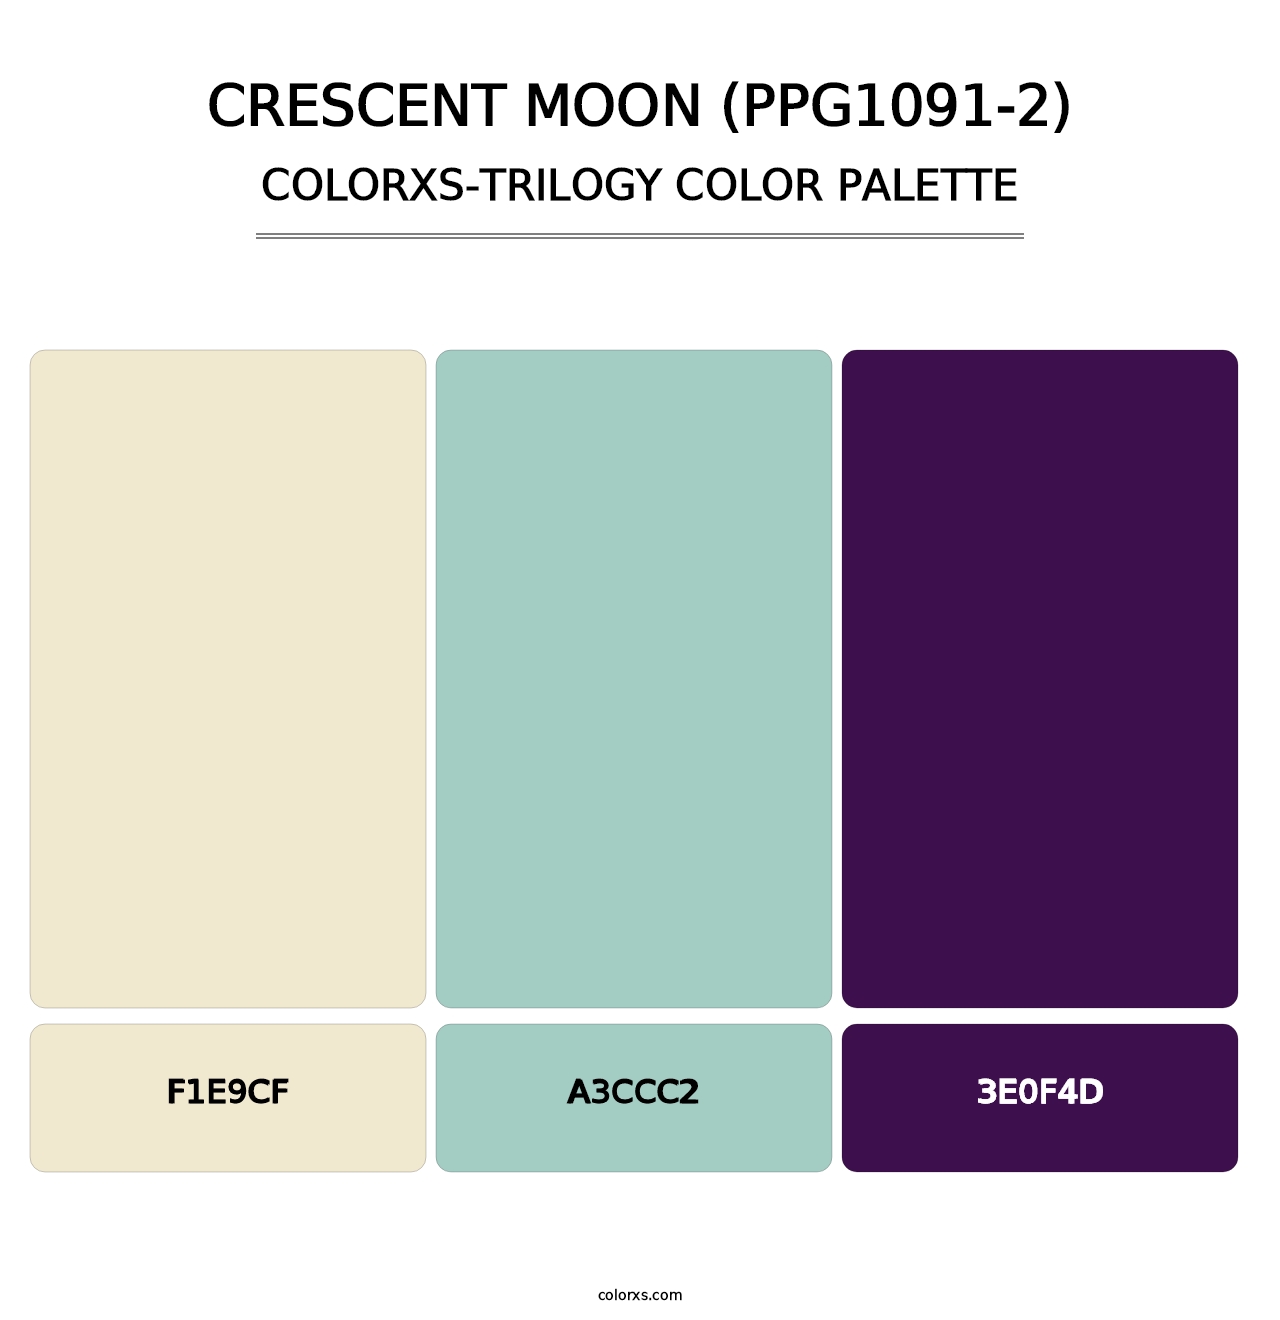 Crescent Moon (PPG1091-2) - Colorxs Trilogy Palette